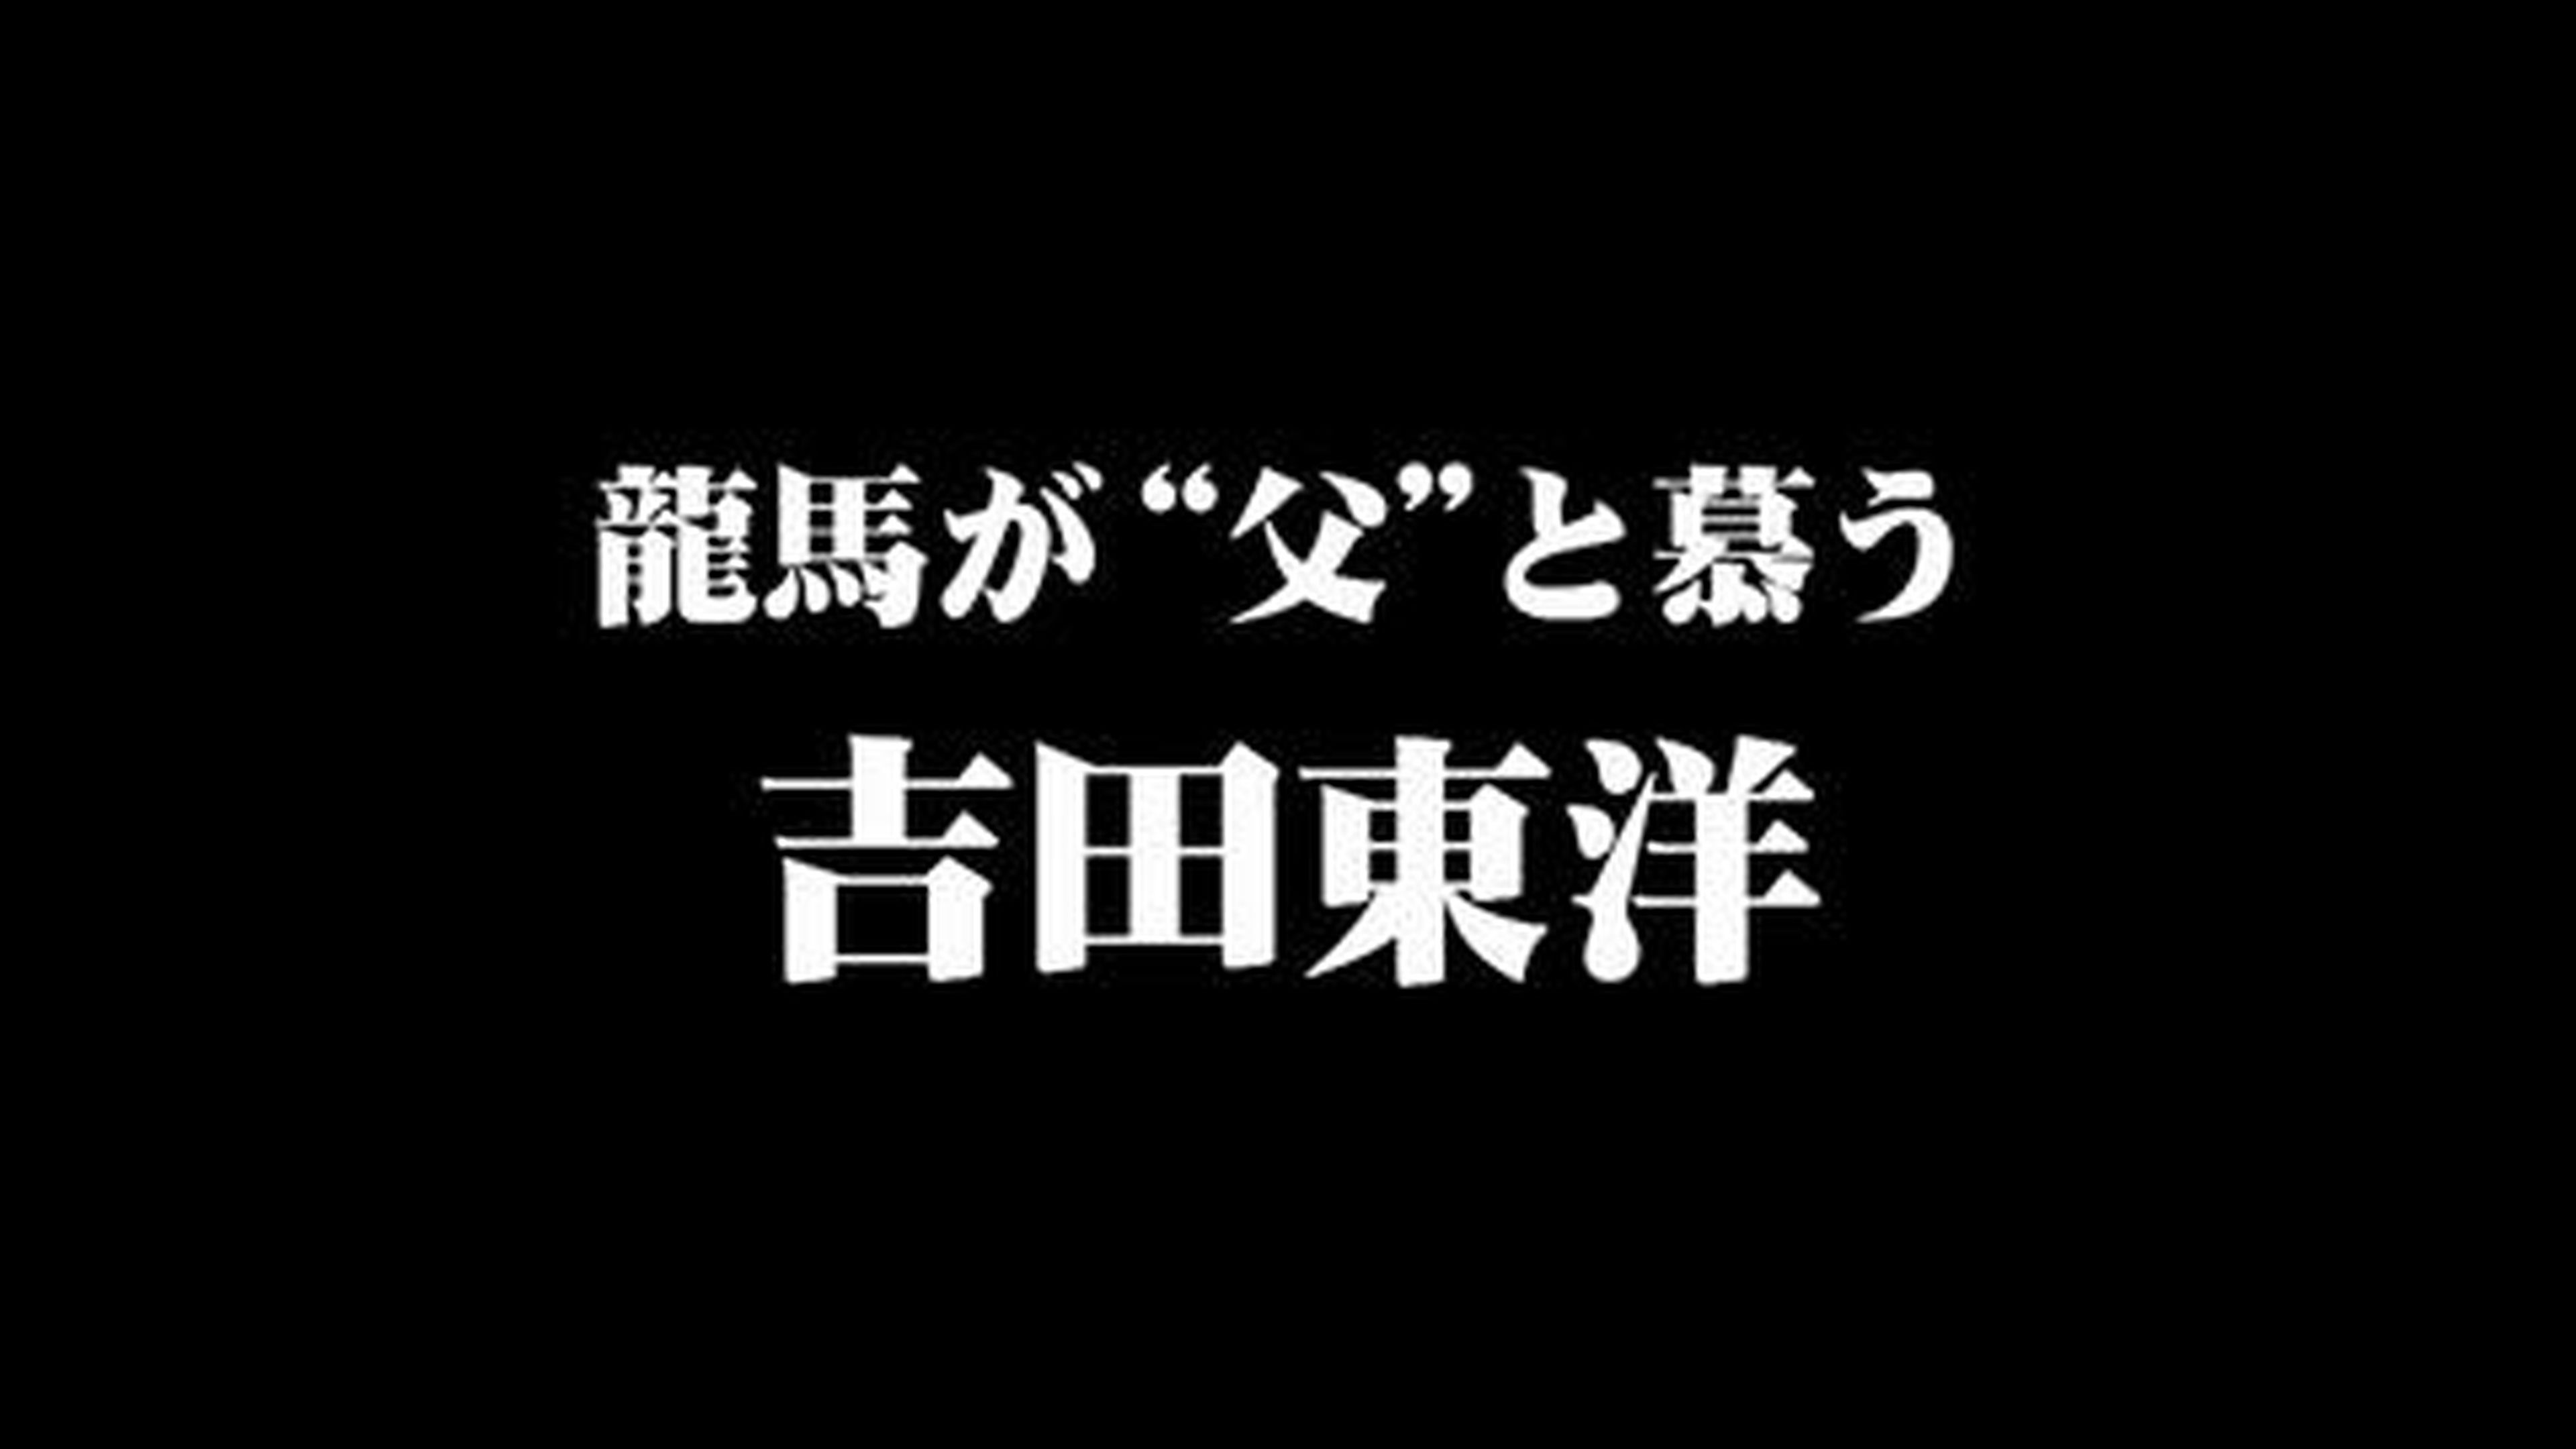 Tráiler extendido de Yakuza Ishin en HobbyConsolas.com